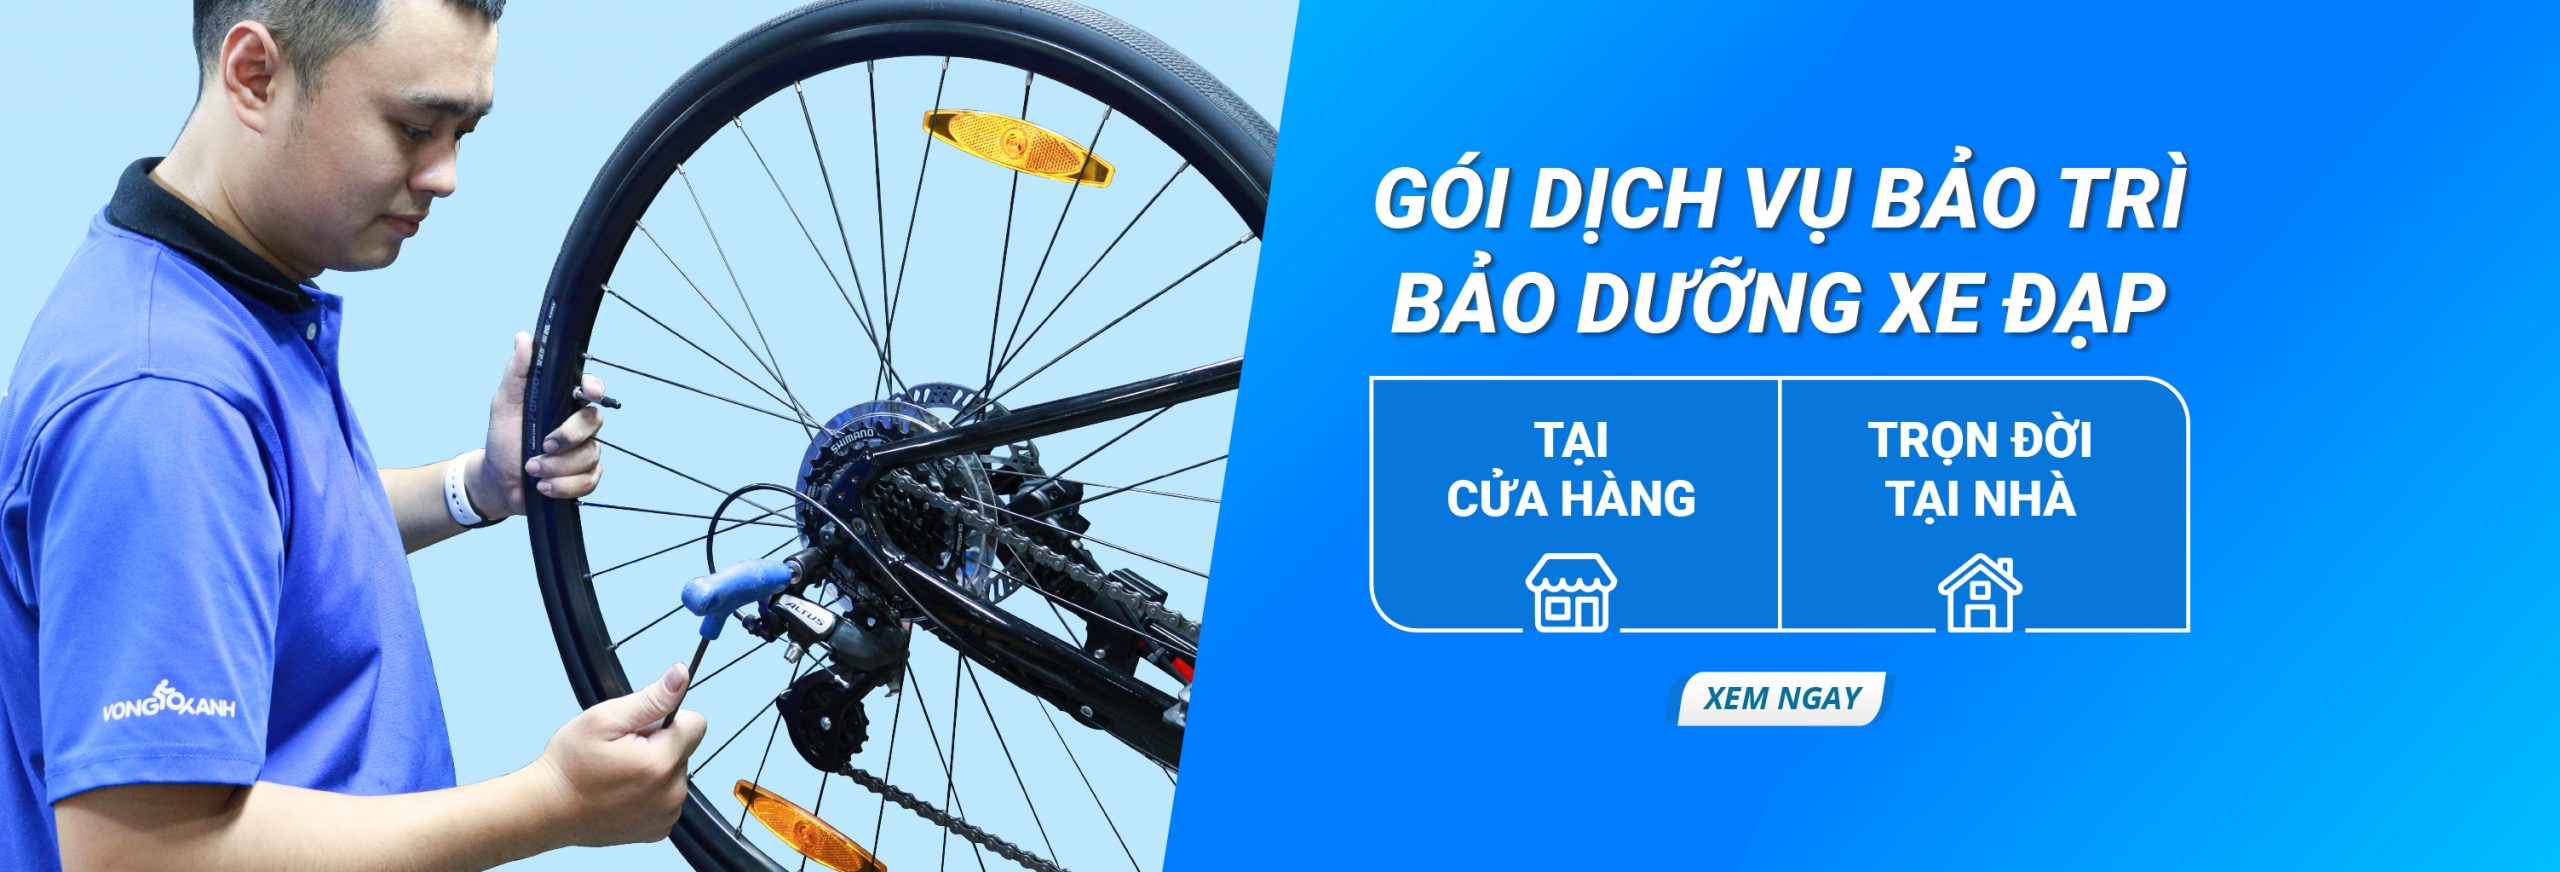 7 sai lầm cần tránh khi bạn tự sửa chữa xe đạp của mình  Xe đạp Giant  International  NPP độc quyền thương hiệu Xe đạp Giant Quốc tế tại Việt Nam